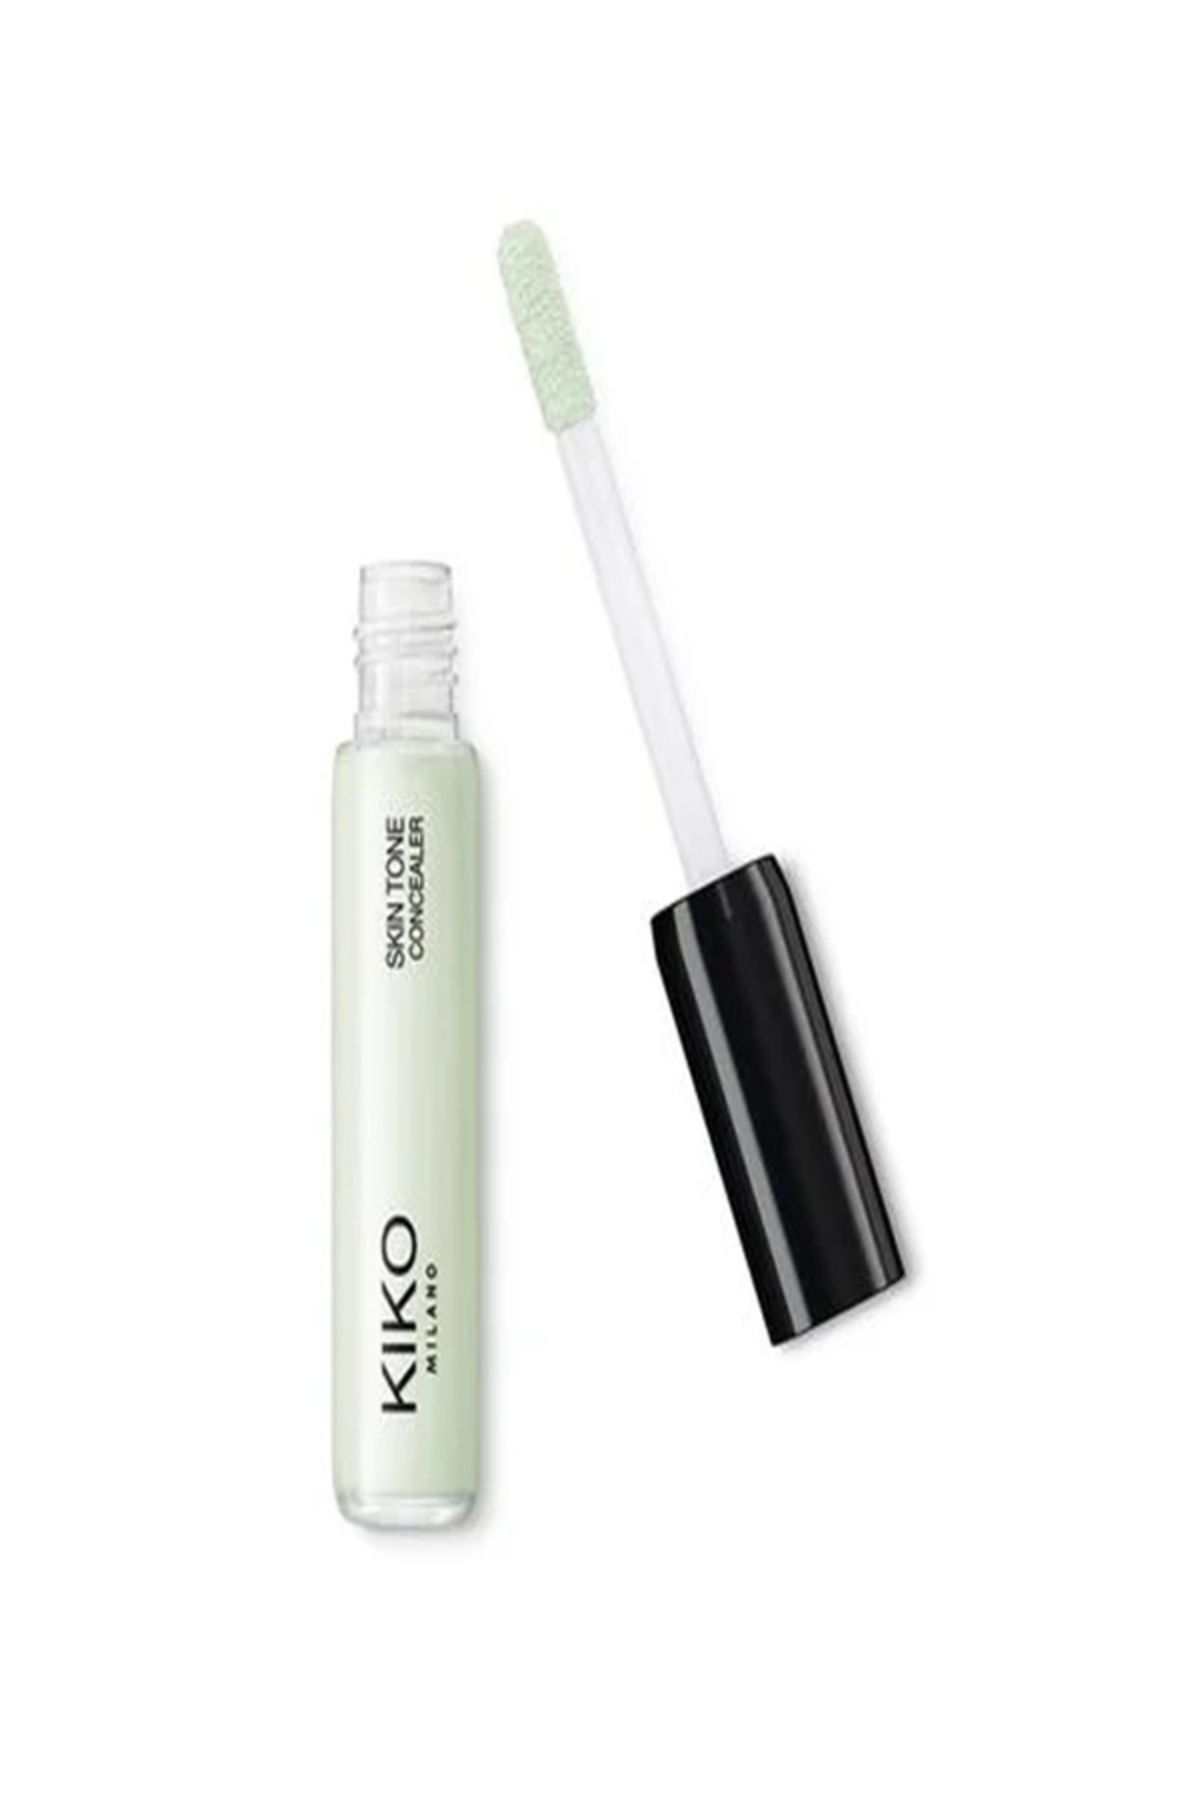 KIKO Skin Tone Concealer- Yeni Likit Formüllü Göz Altı Halka Karşıtı Kapatıcı